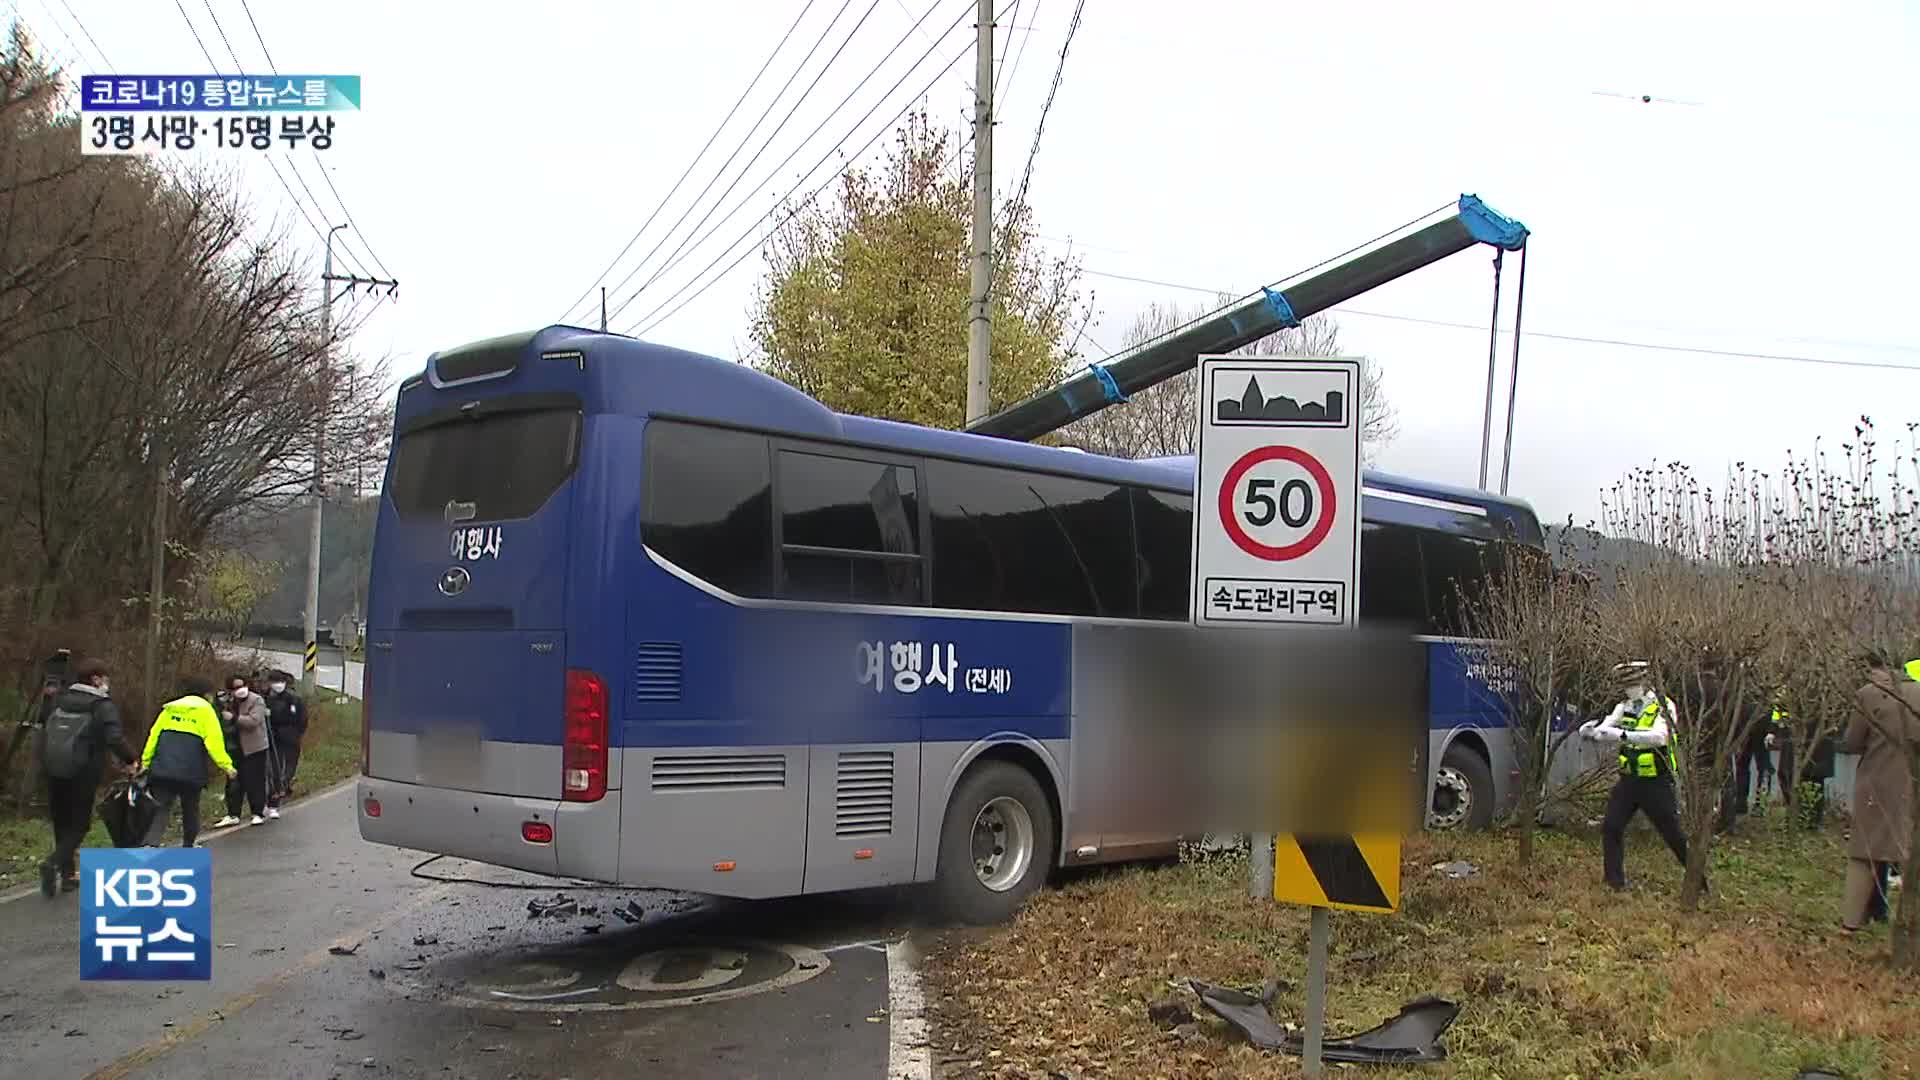 통근버스-승용차 충돌 3명 사망·15명 부상…사망 3명은 외국인 노동자